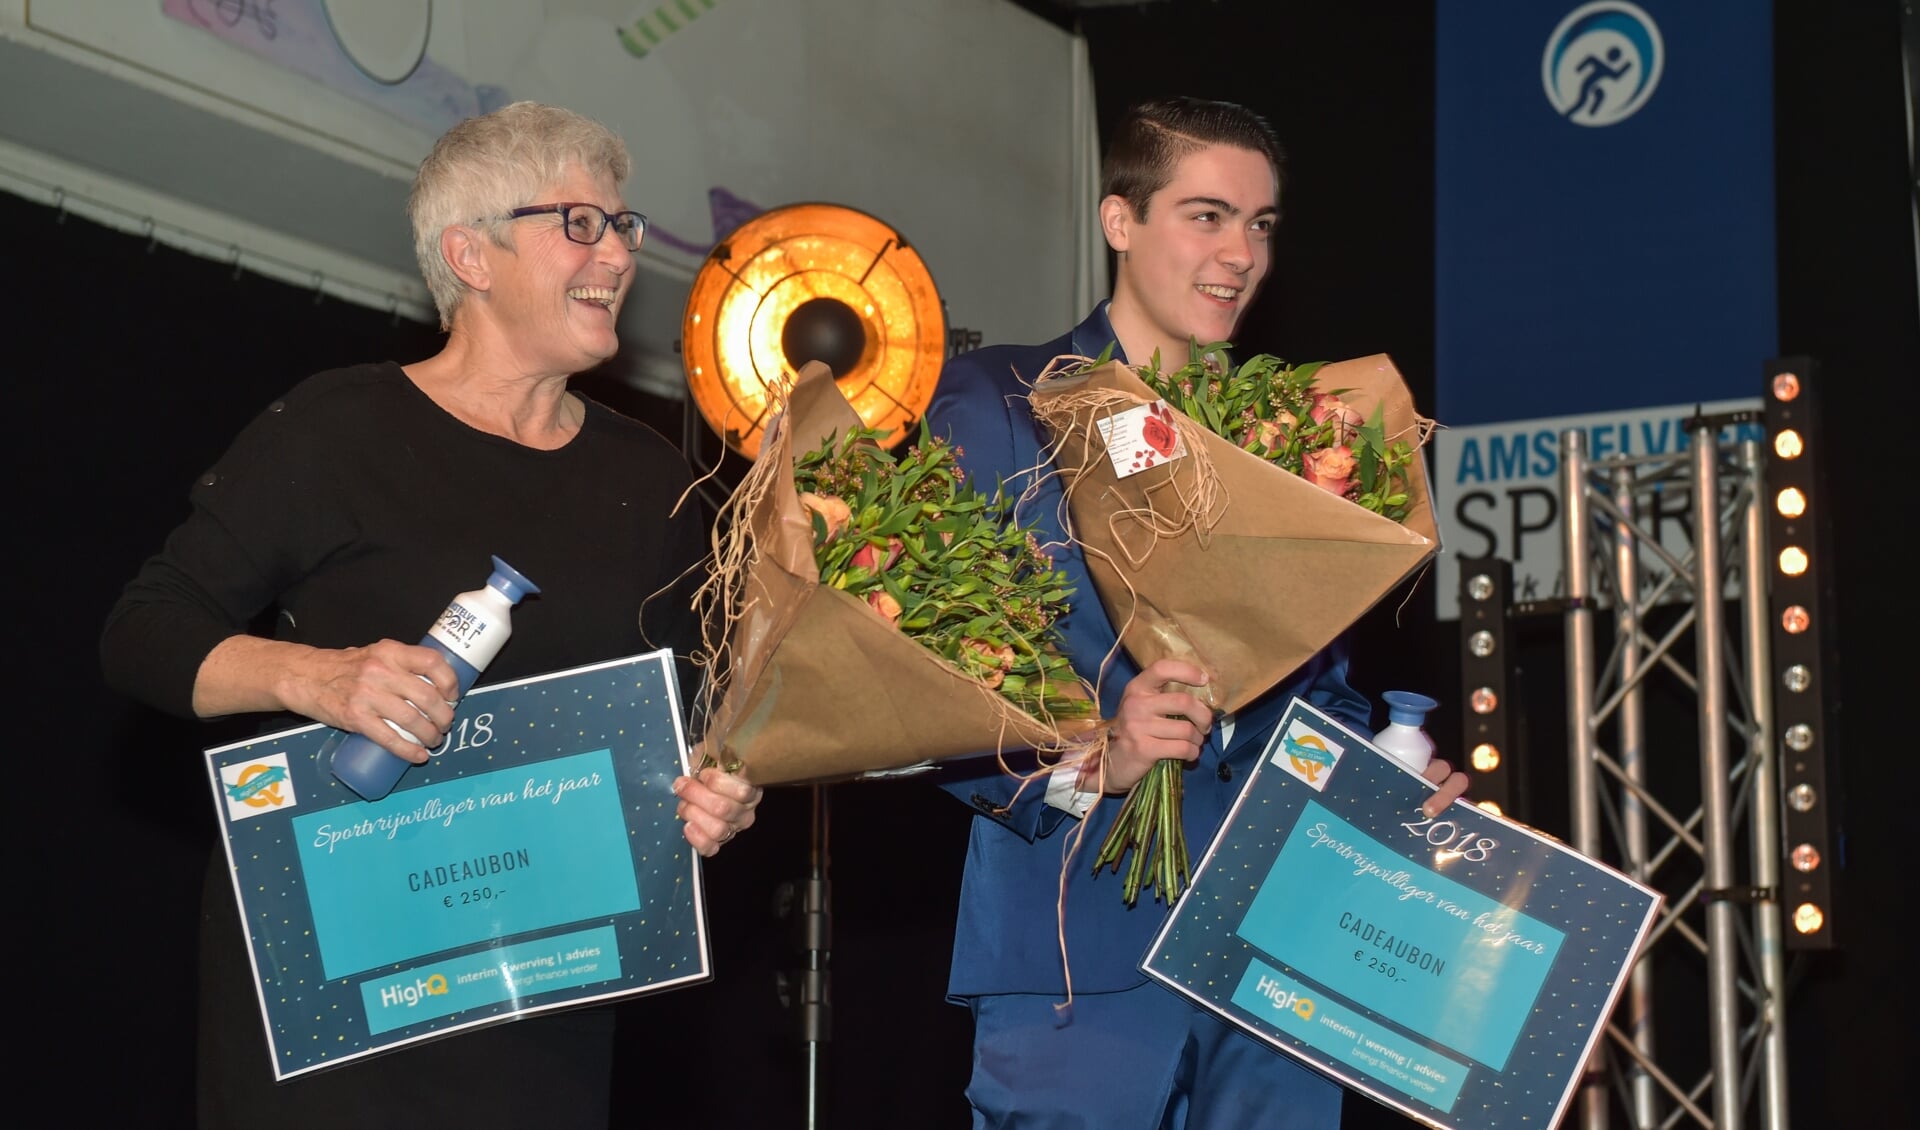 De winnaars van de Sportvrijwilligersprijs 2018: Jeanne Hogerwerf en Giovanni Raineri.